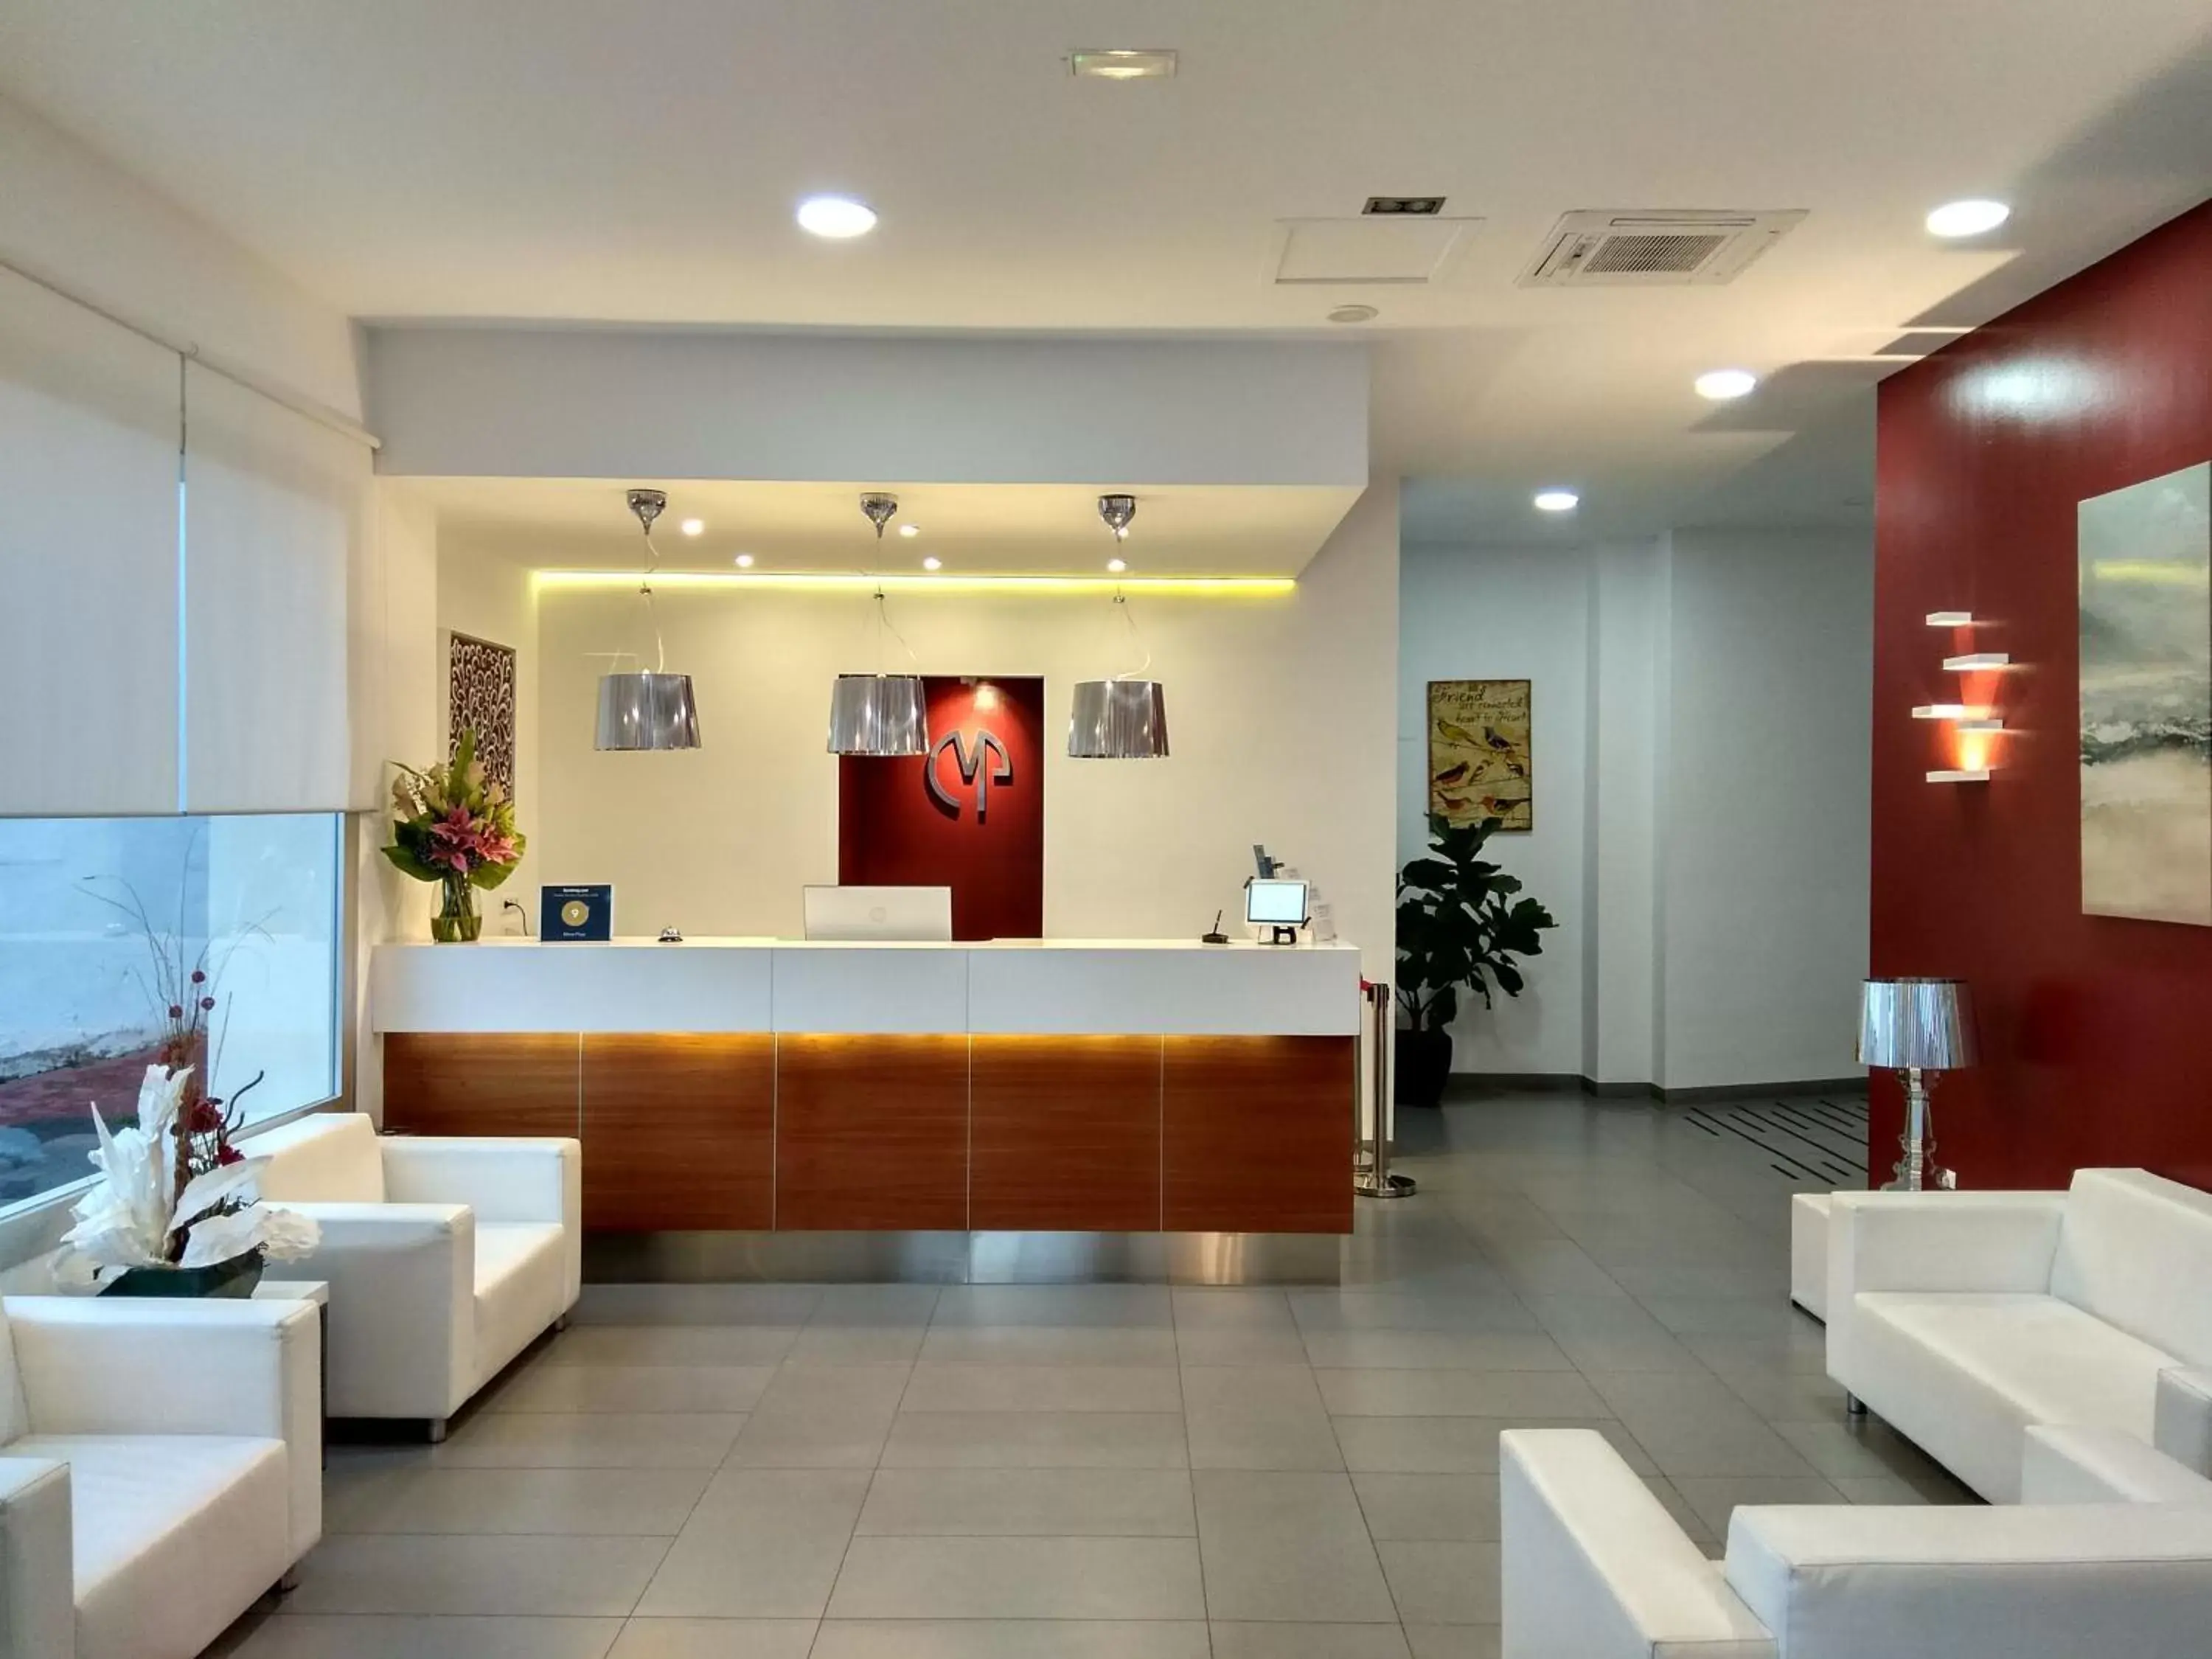 Lobby or reception, Lobby/Reception in Mena Plaza